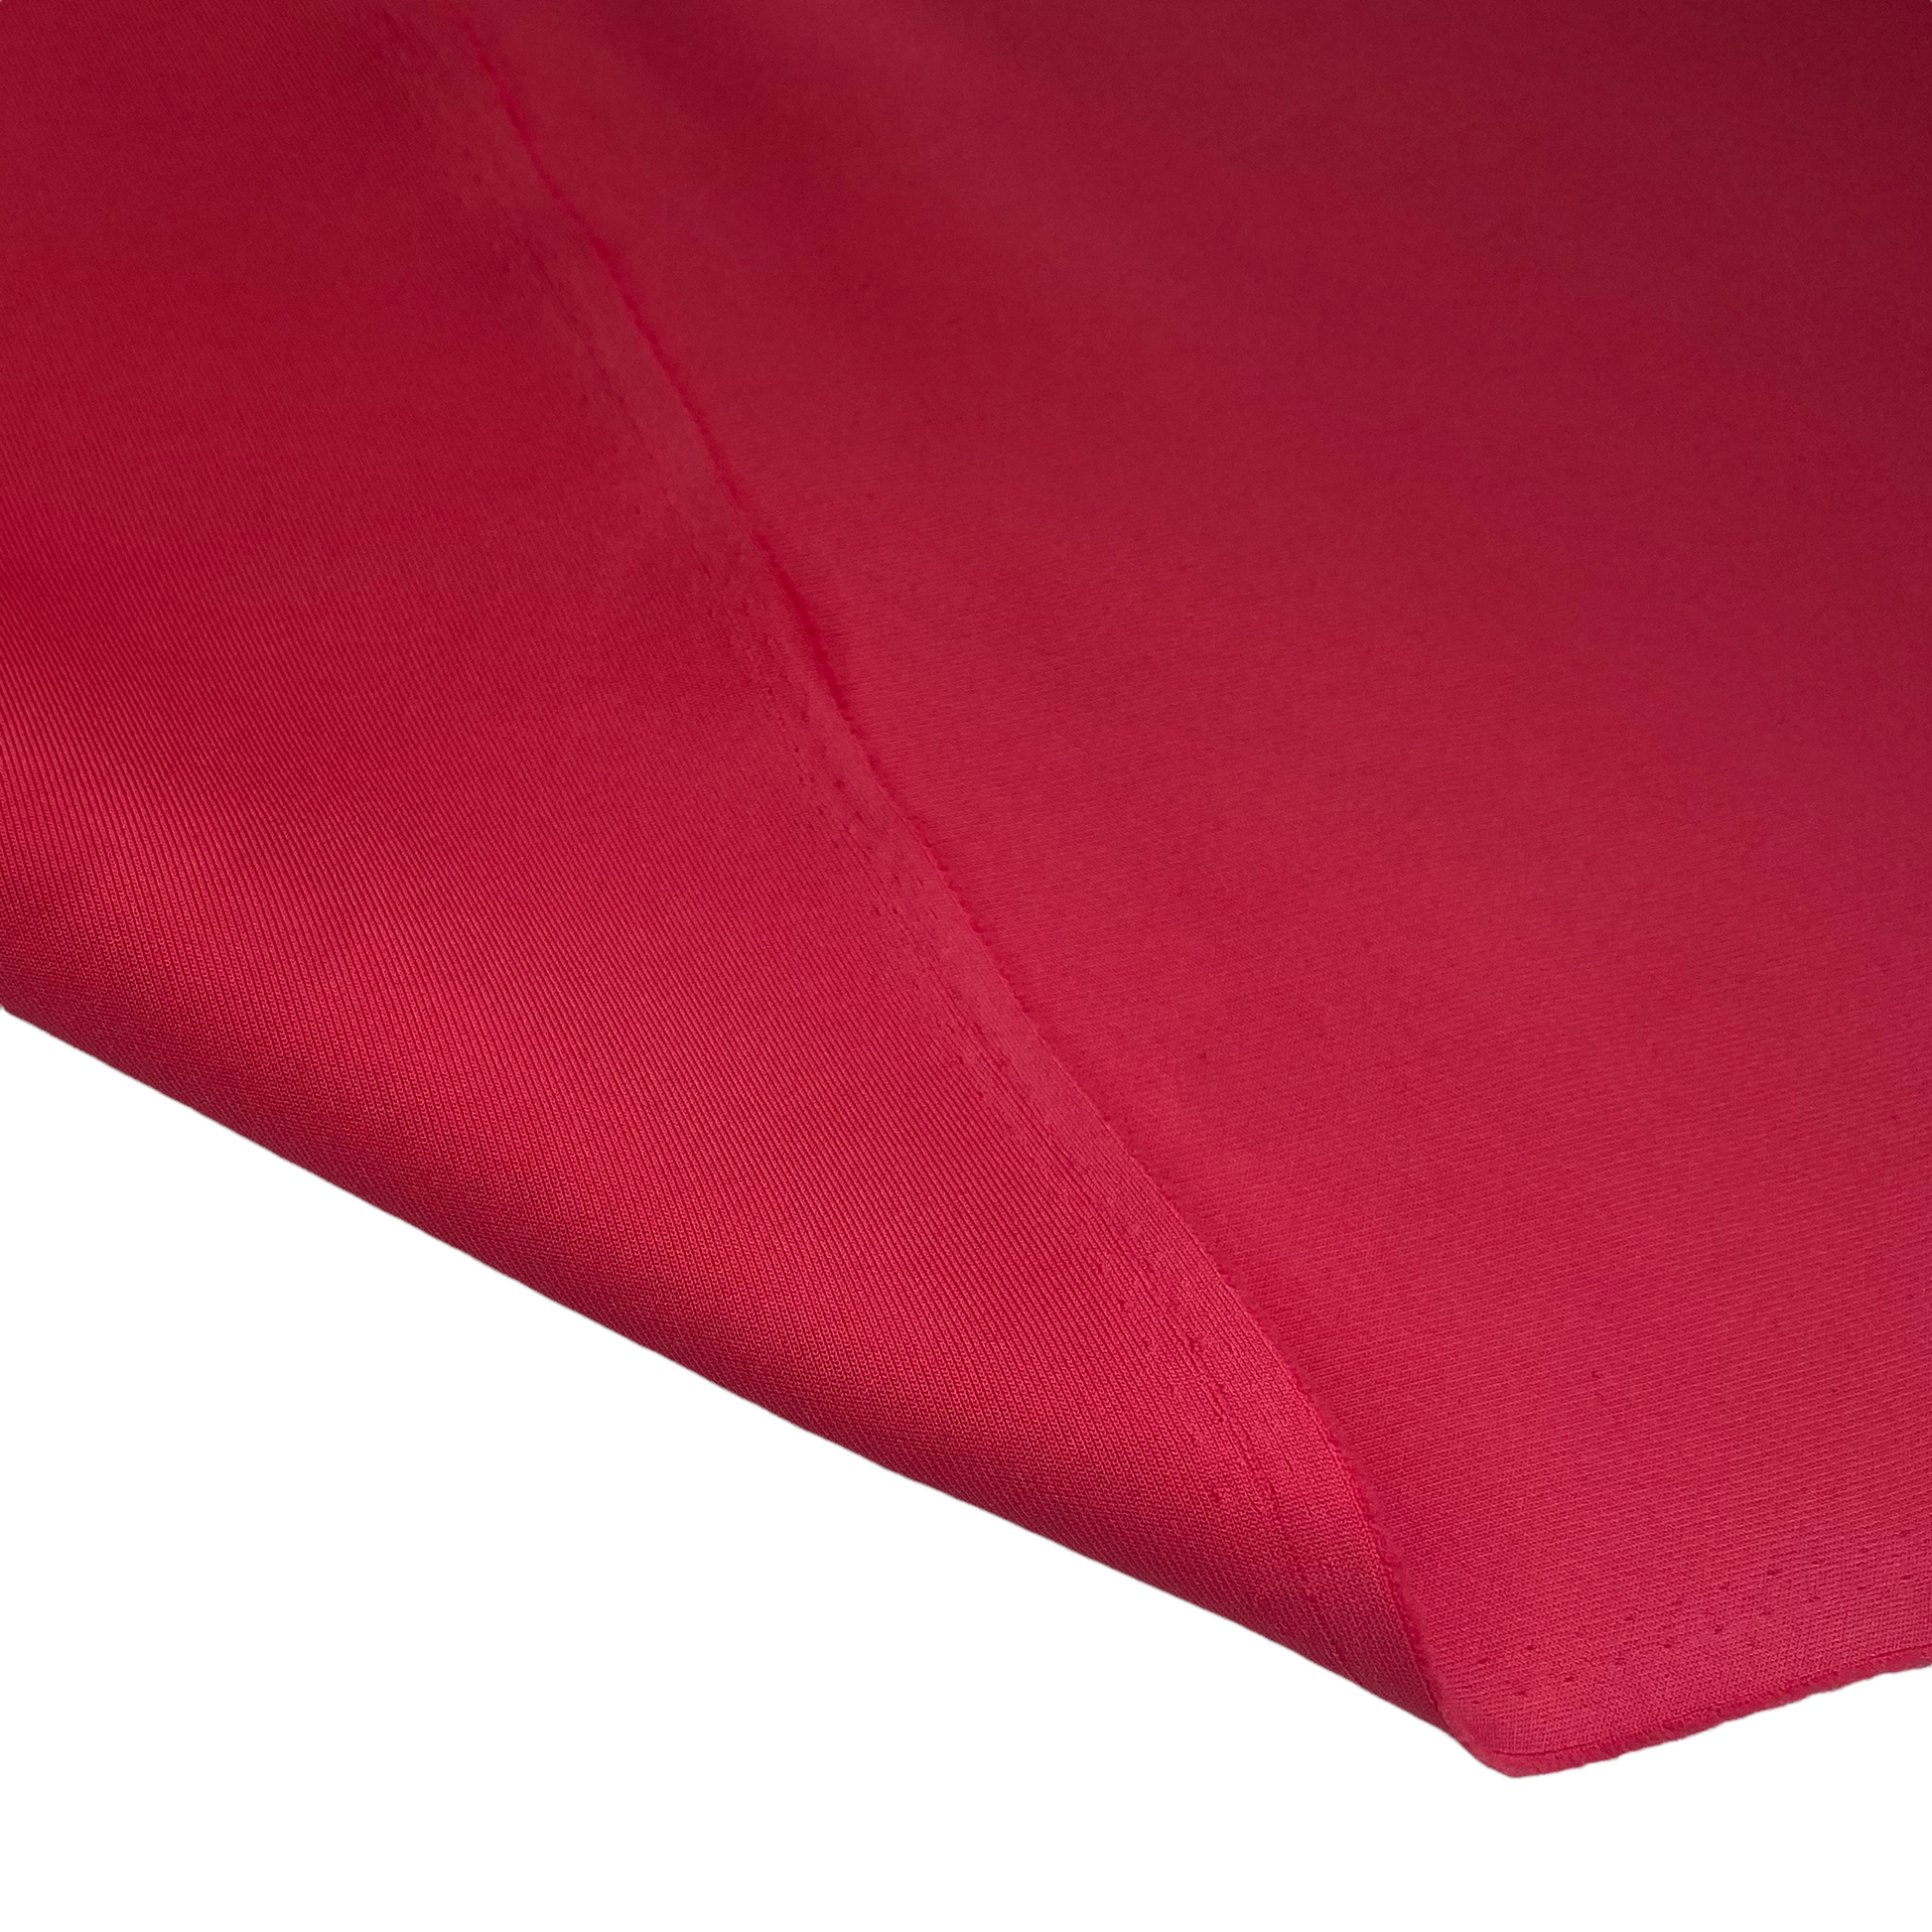 Pink 60 Inches Stretch Scuba Neoprene Fabric